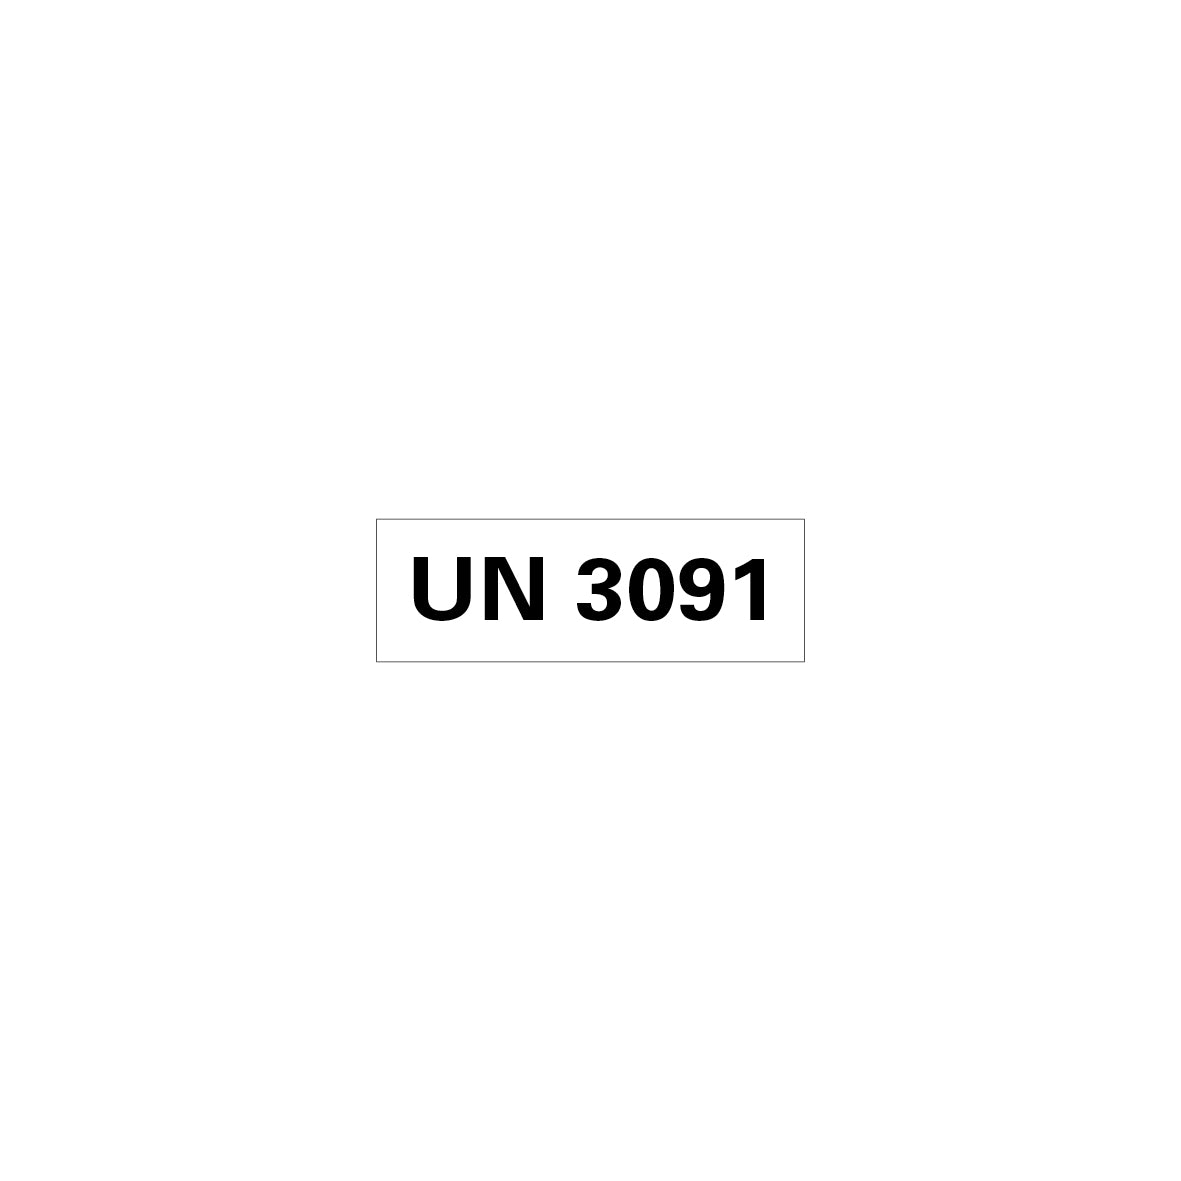 Gefahrgut UN, 5.0160.1, 150 x 50 mm, Stk., UN 3091 (Lithium-Metall-Batterien in Ausrüstung), auf Bogen, VE 10 Stk.